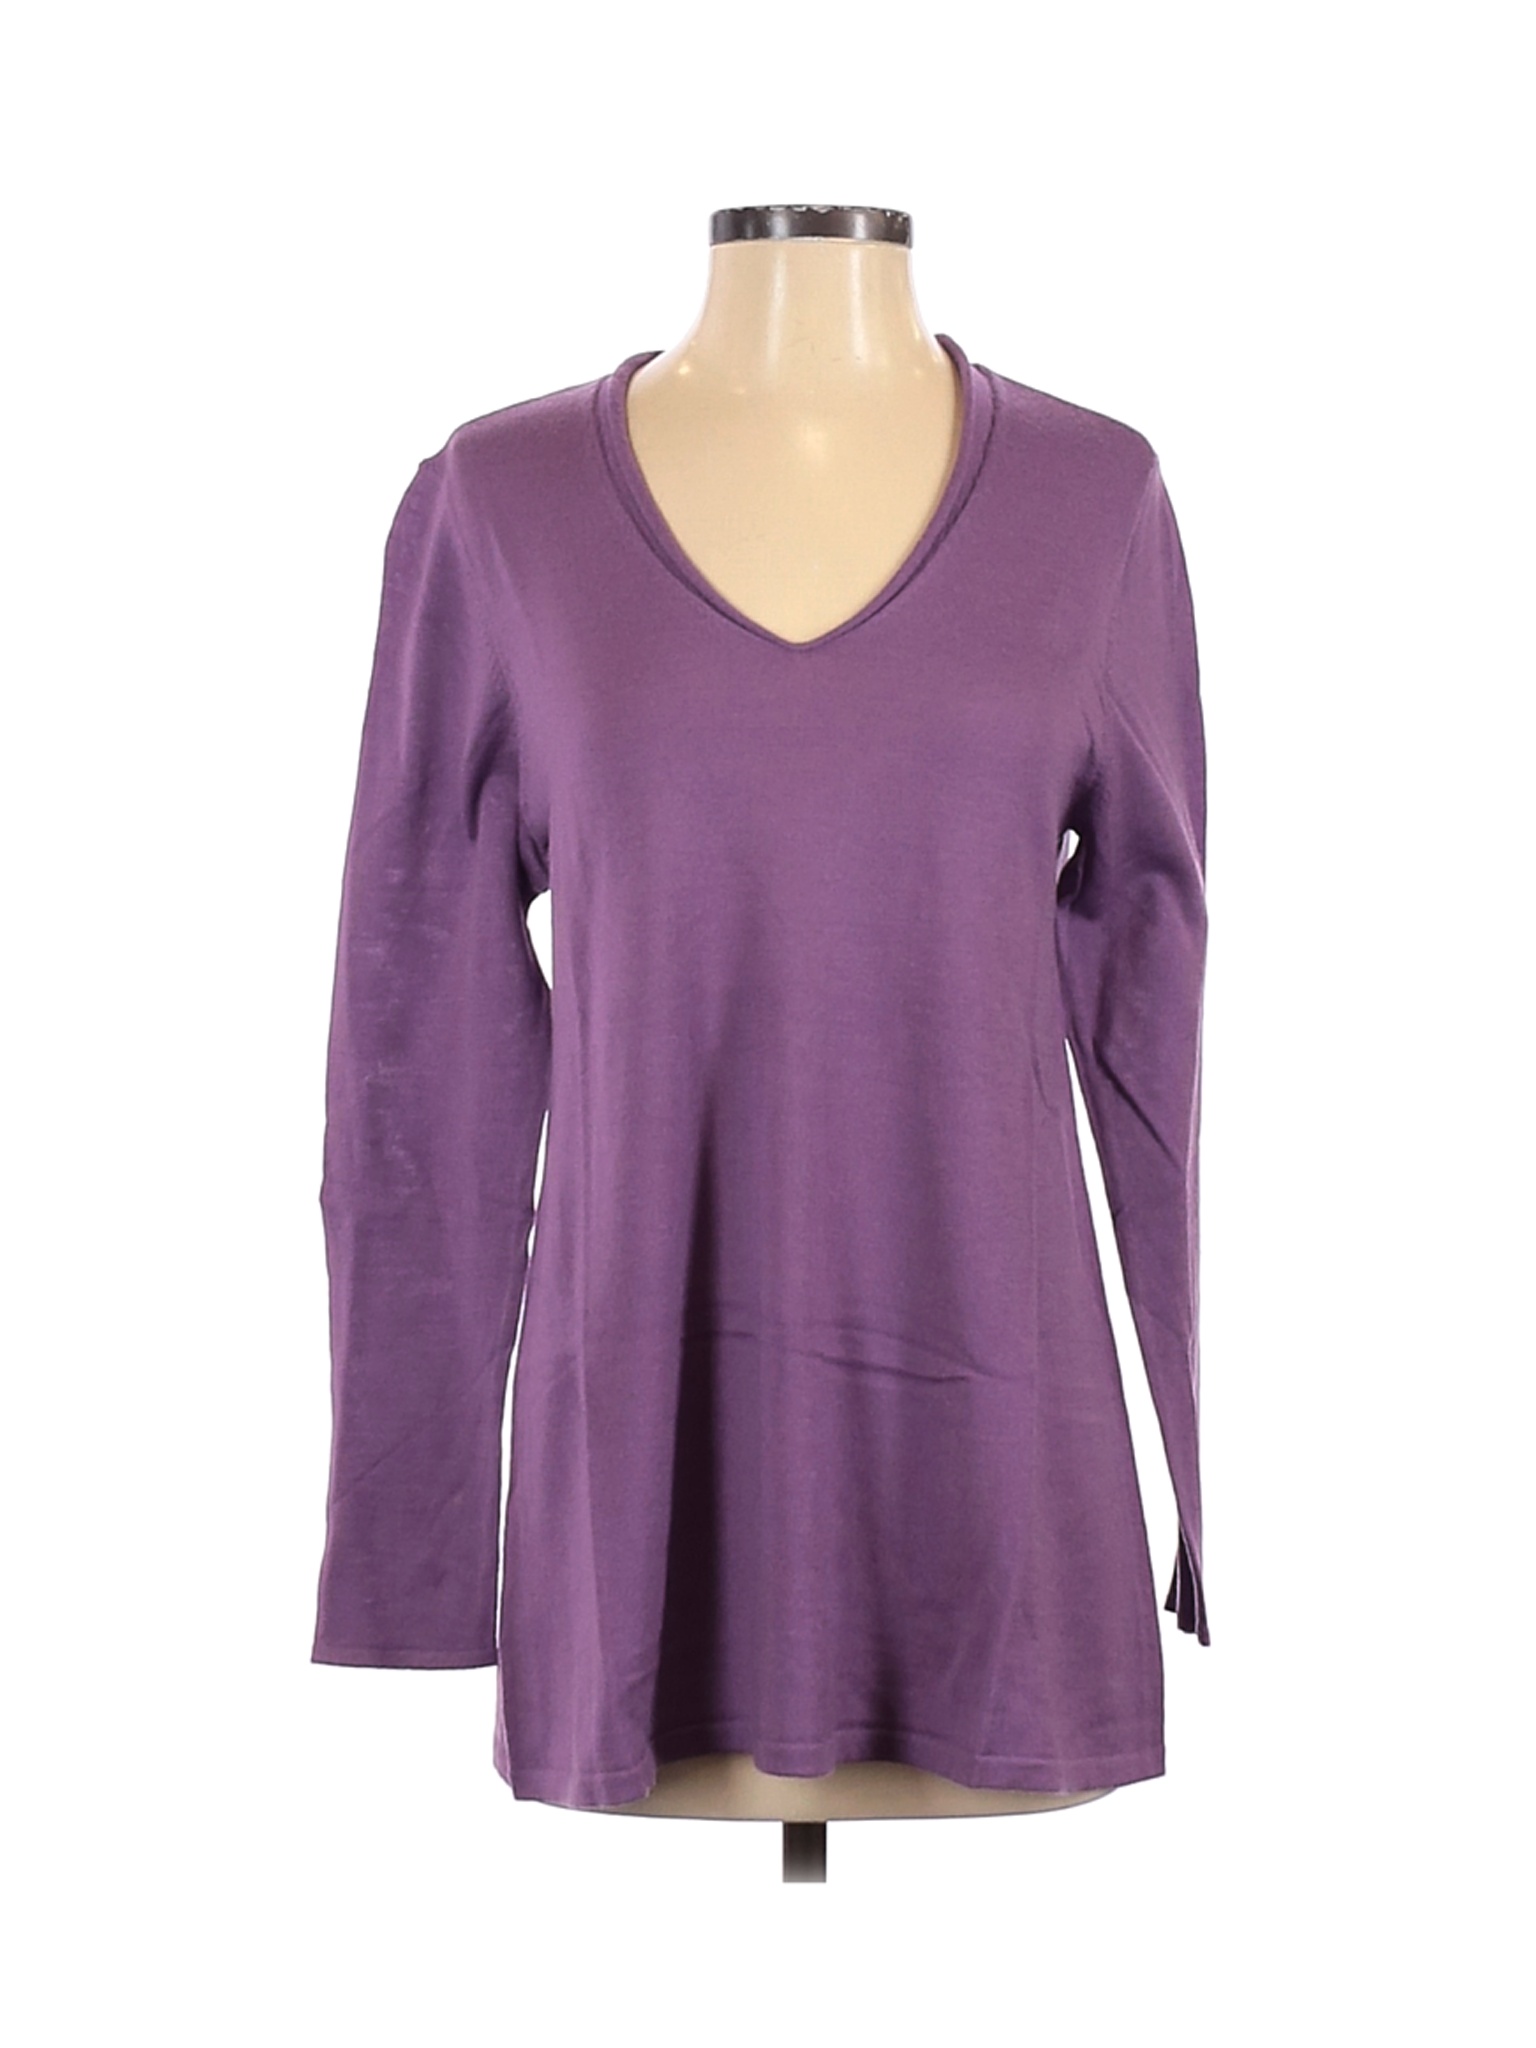 NWT J.Jill Women Purple Wool Pullover Sweater S | eBay